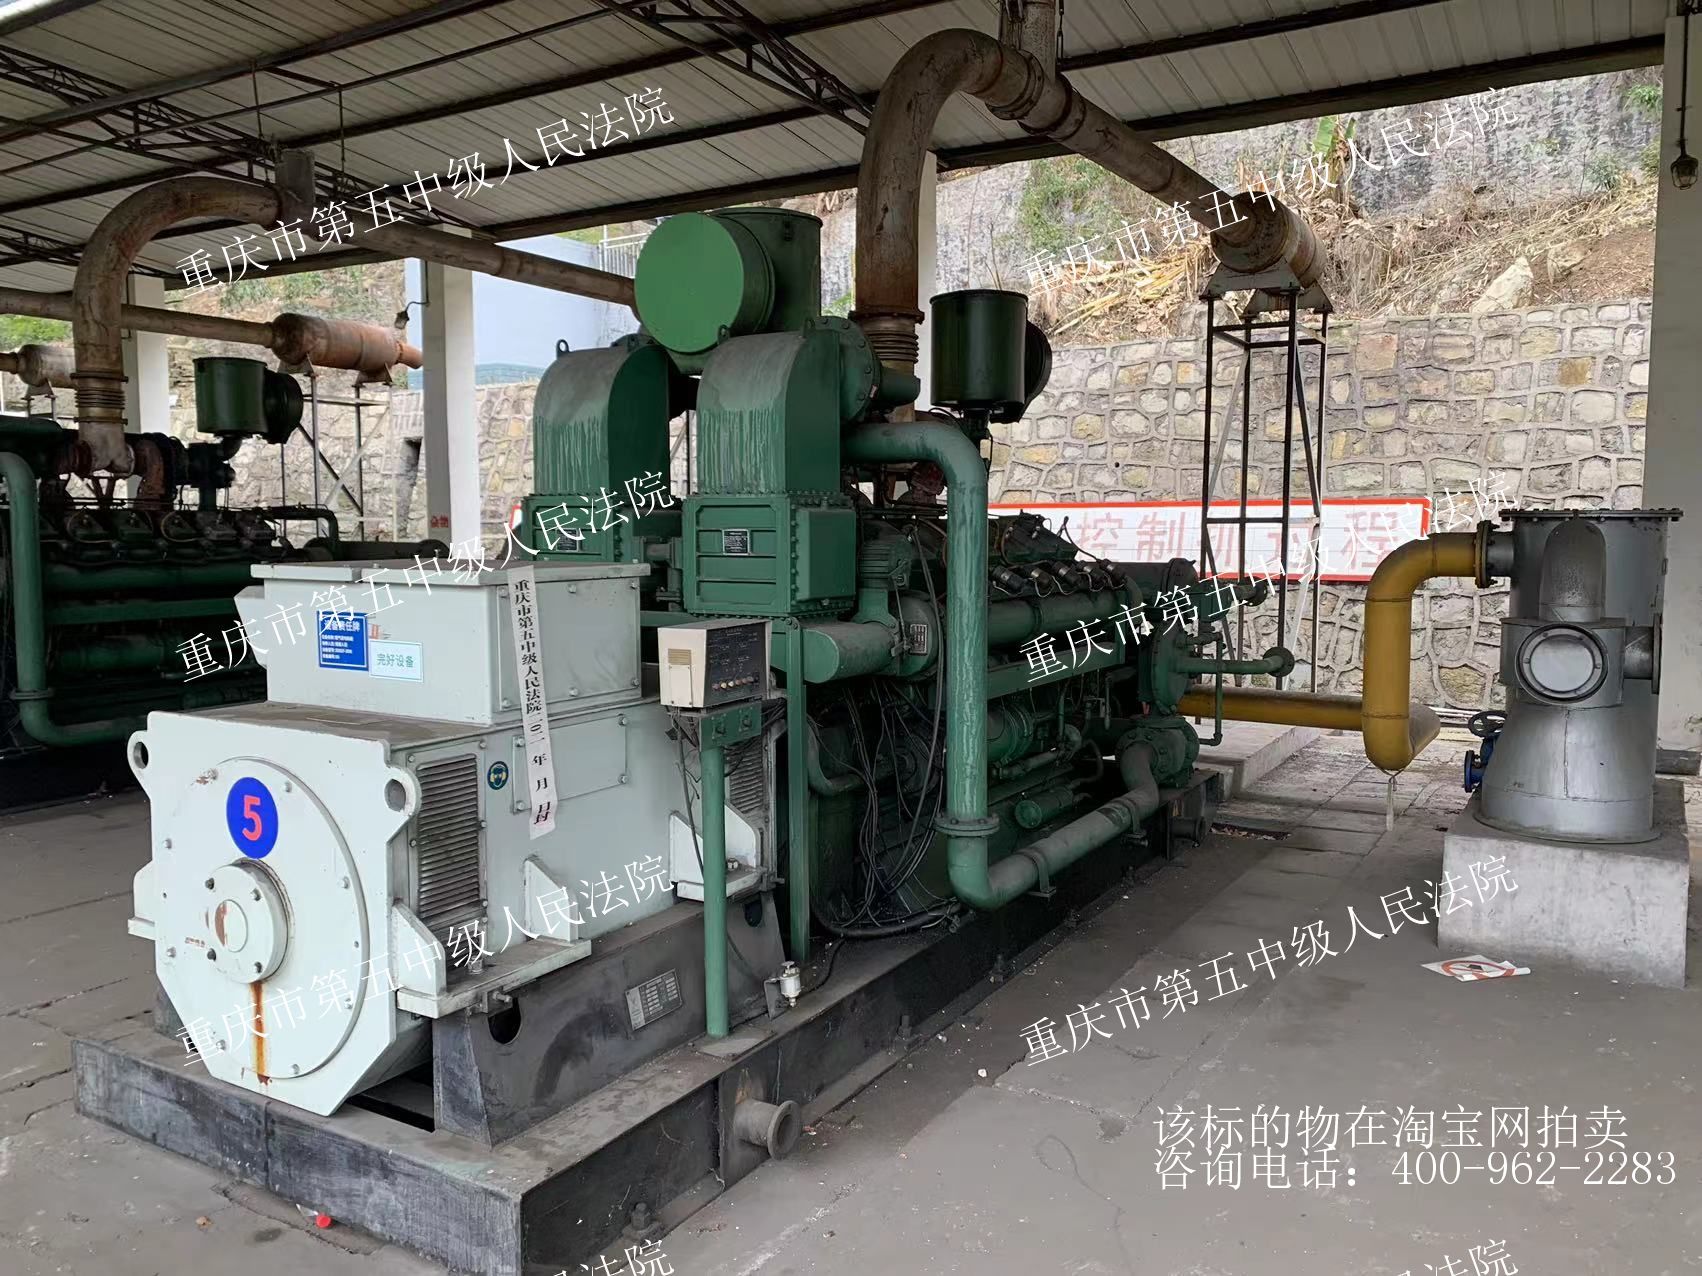 重慶松藻瓦斯開發有限公司放置在重慶市金雞巖低濃度瓦斯發電站的500GF1-3RWD型5#發電機組